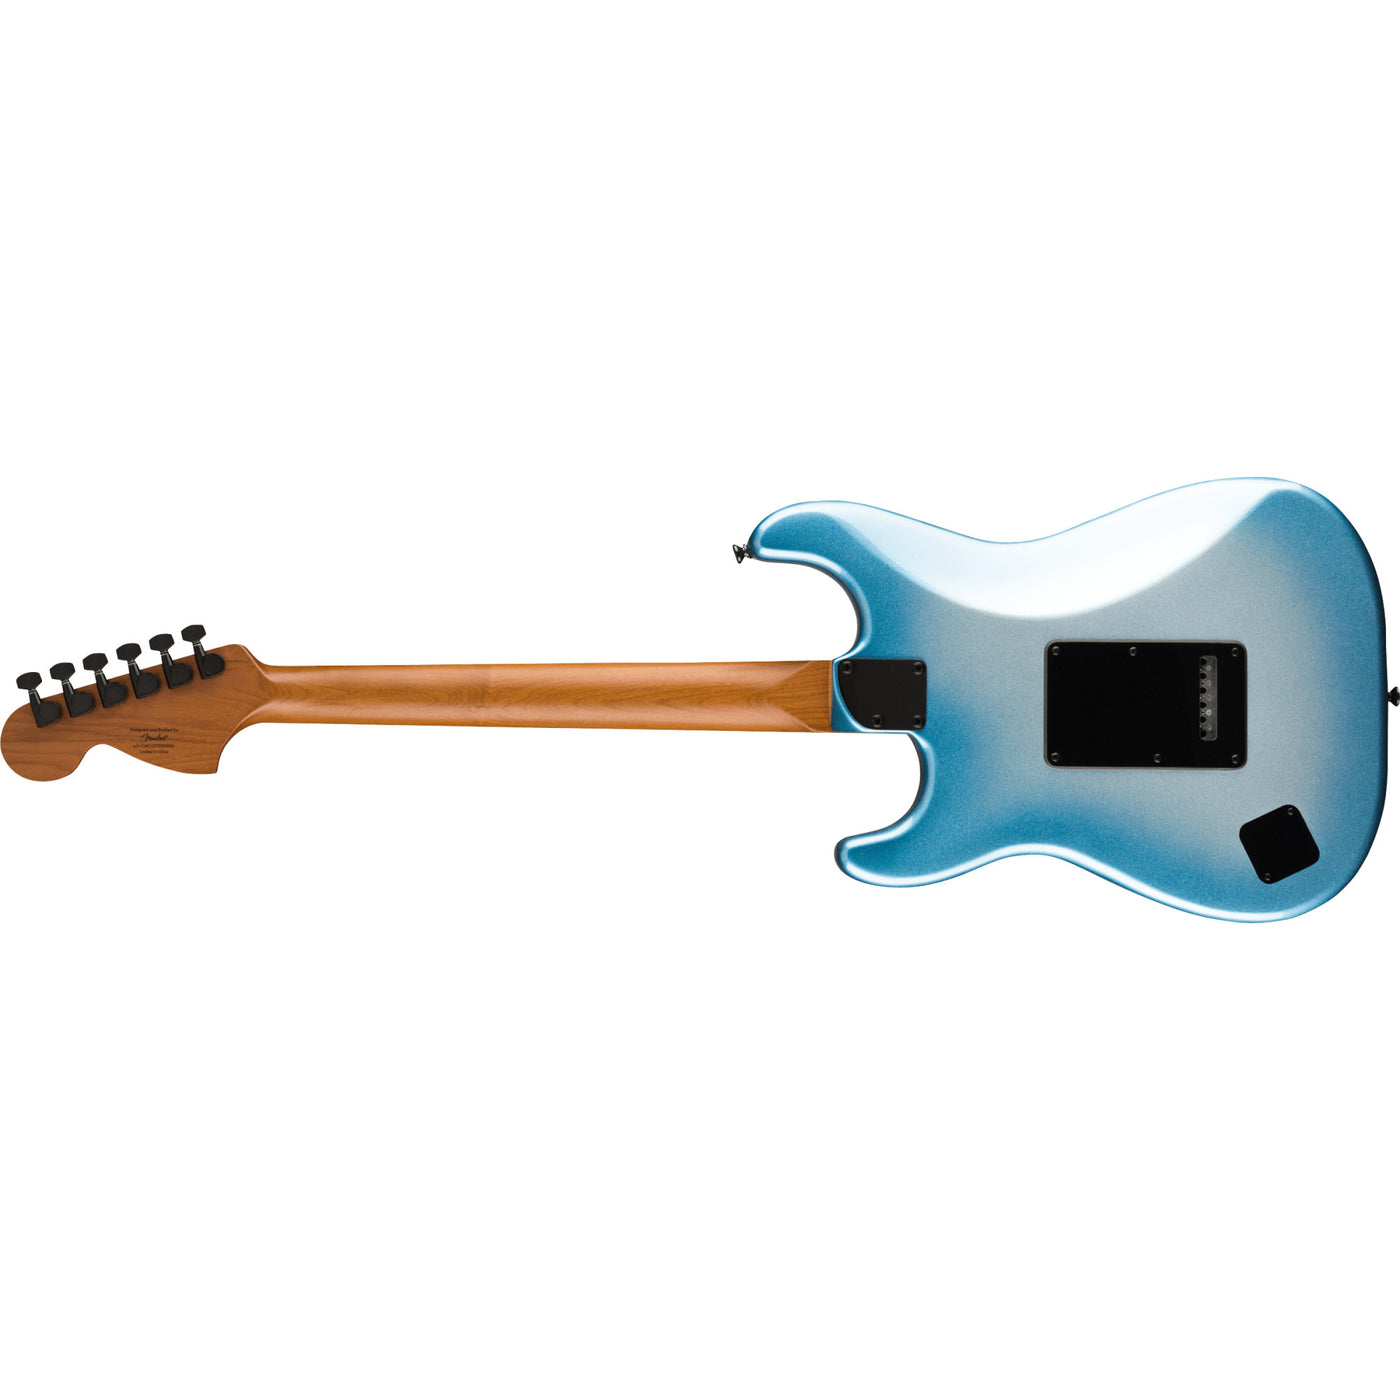 Fender Contemporary Stratocaster Special Electric Guitar, Sky Burst Metallic (0370230536)